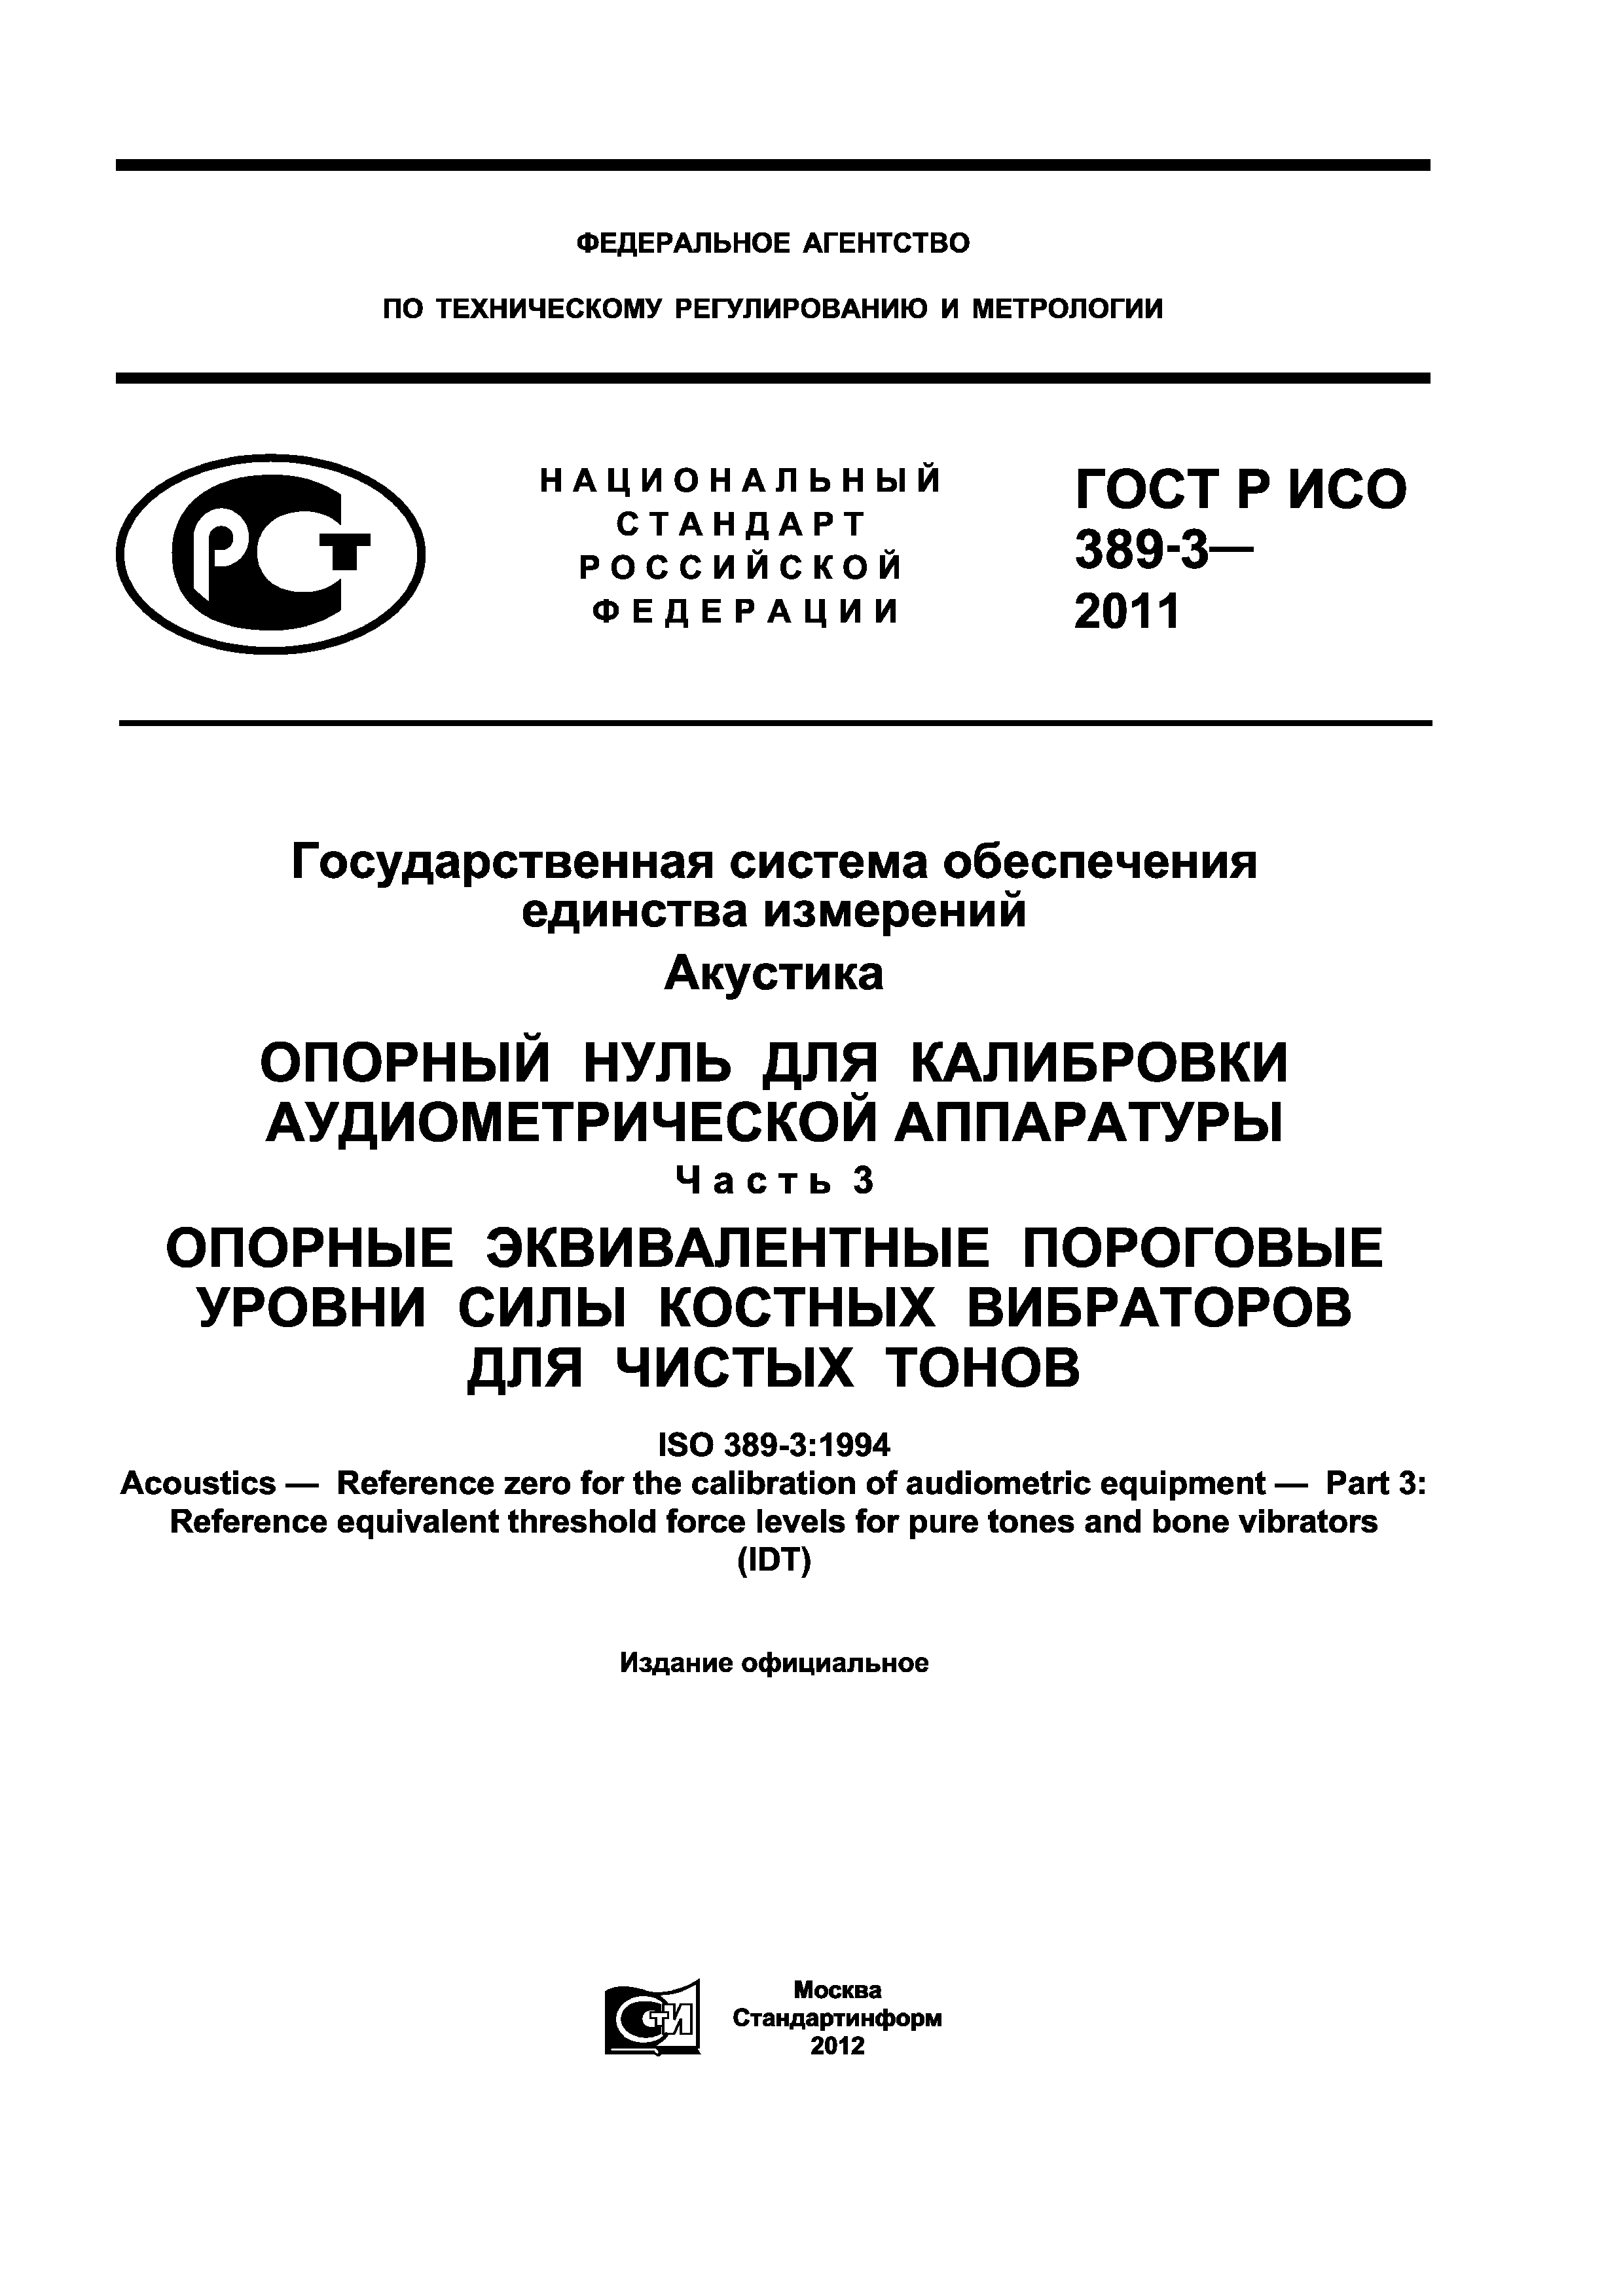 ГОСТ Р ИСО 389-3-2011